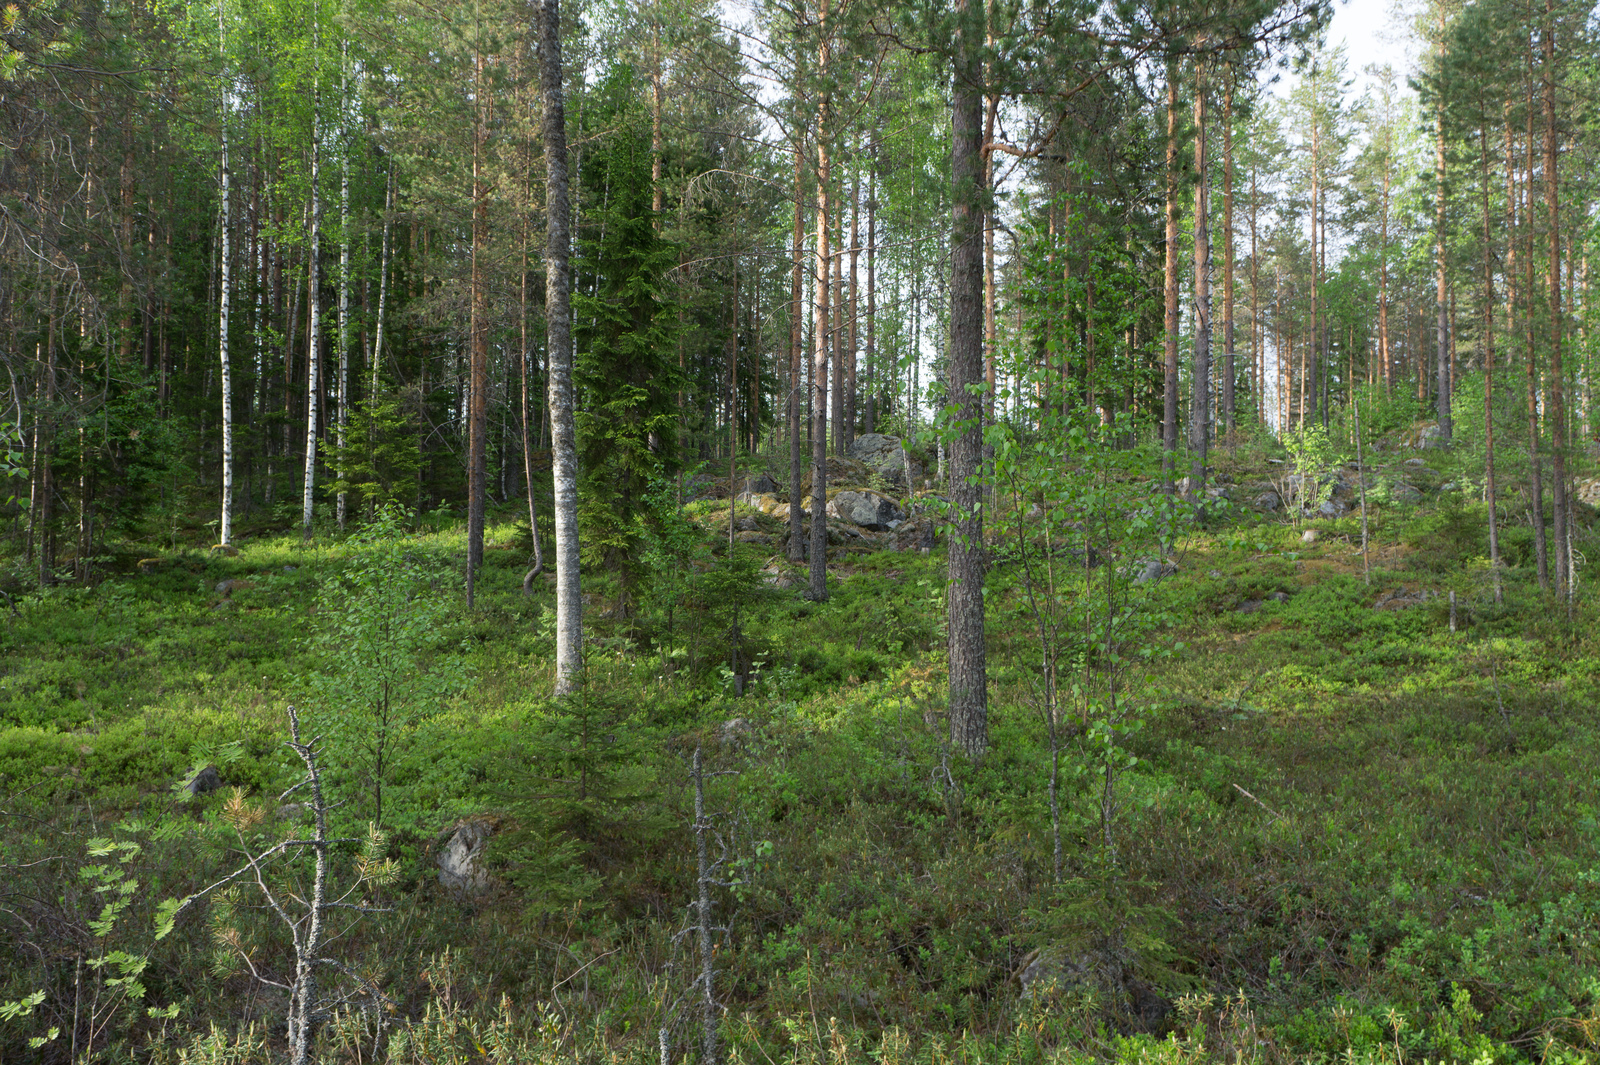 Kesäisessä metsässä kasvaa koivuja, mäntyjä ja kuusia. Puiden joukossa on kivikkoinen alue.